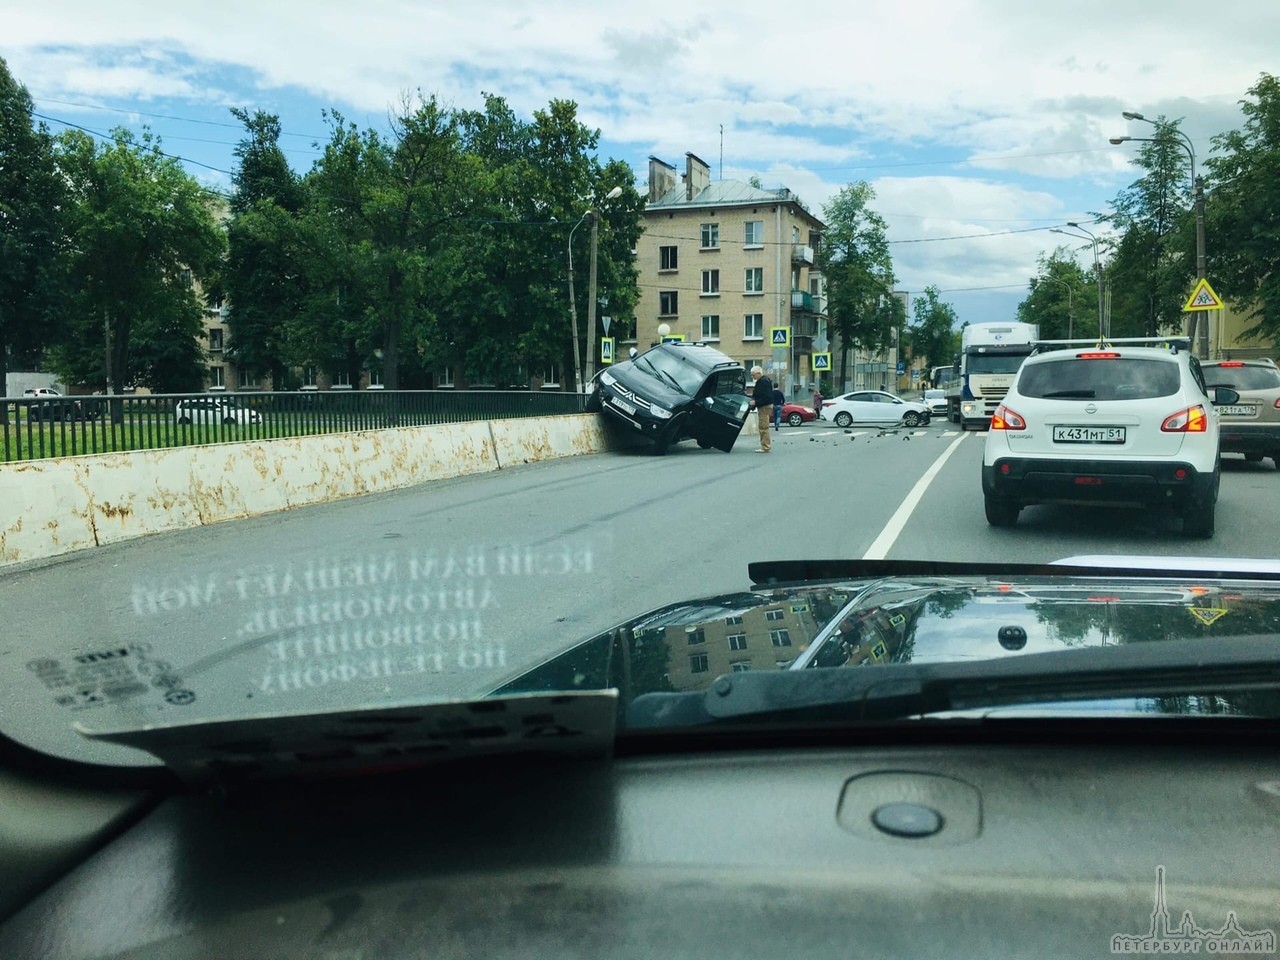 В Колпино Авария на пересечении Красной и набережной Комсомольского канала. Hyundai видимо не пропусти...